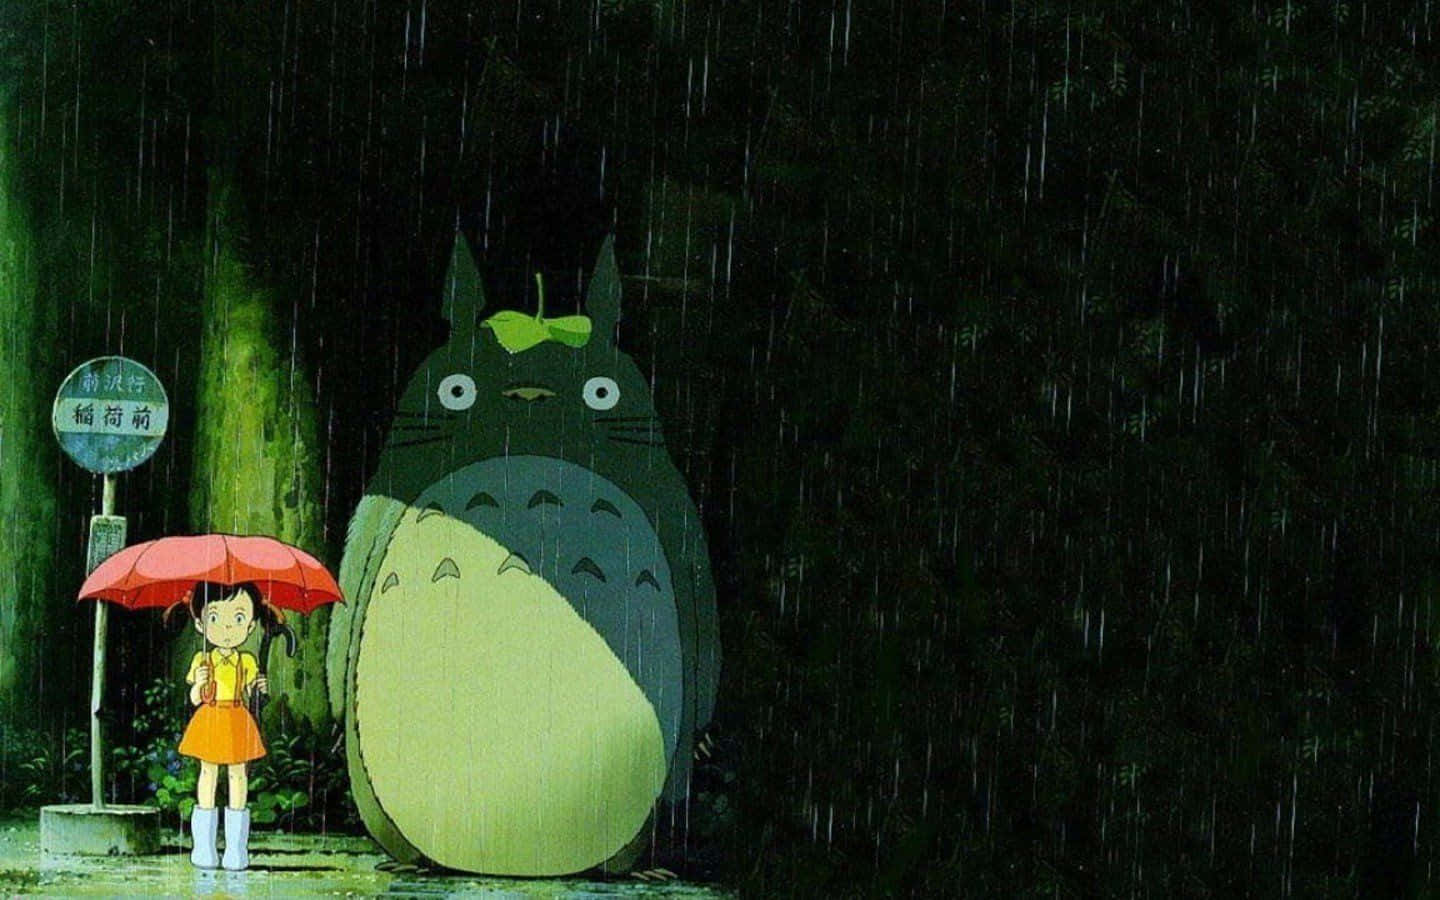 Einbezaubernder Totoro Umarmt Einen Spaziergang In Der Üppigen Natur.